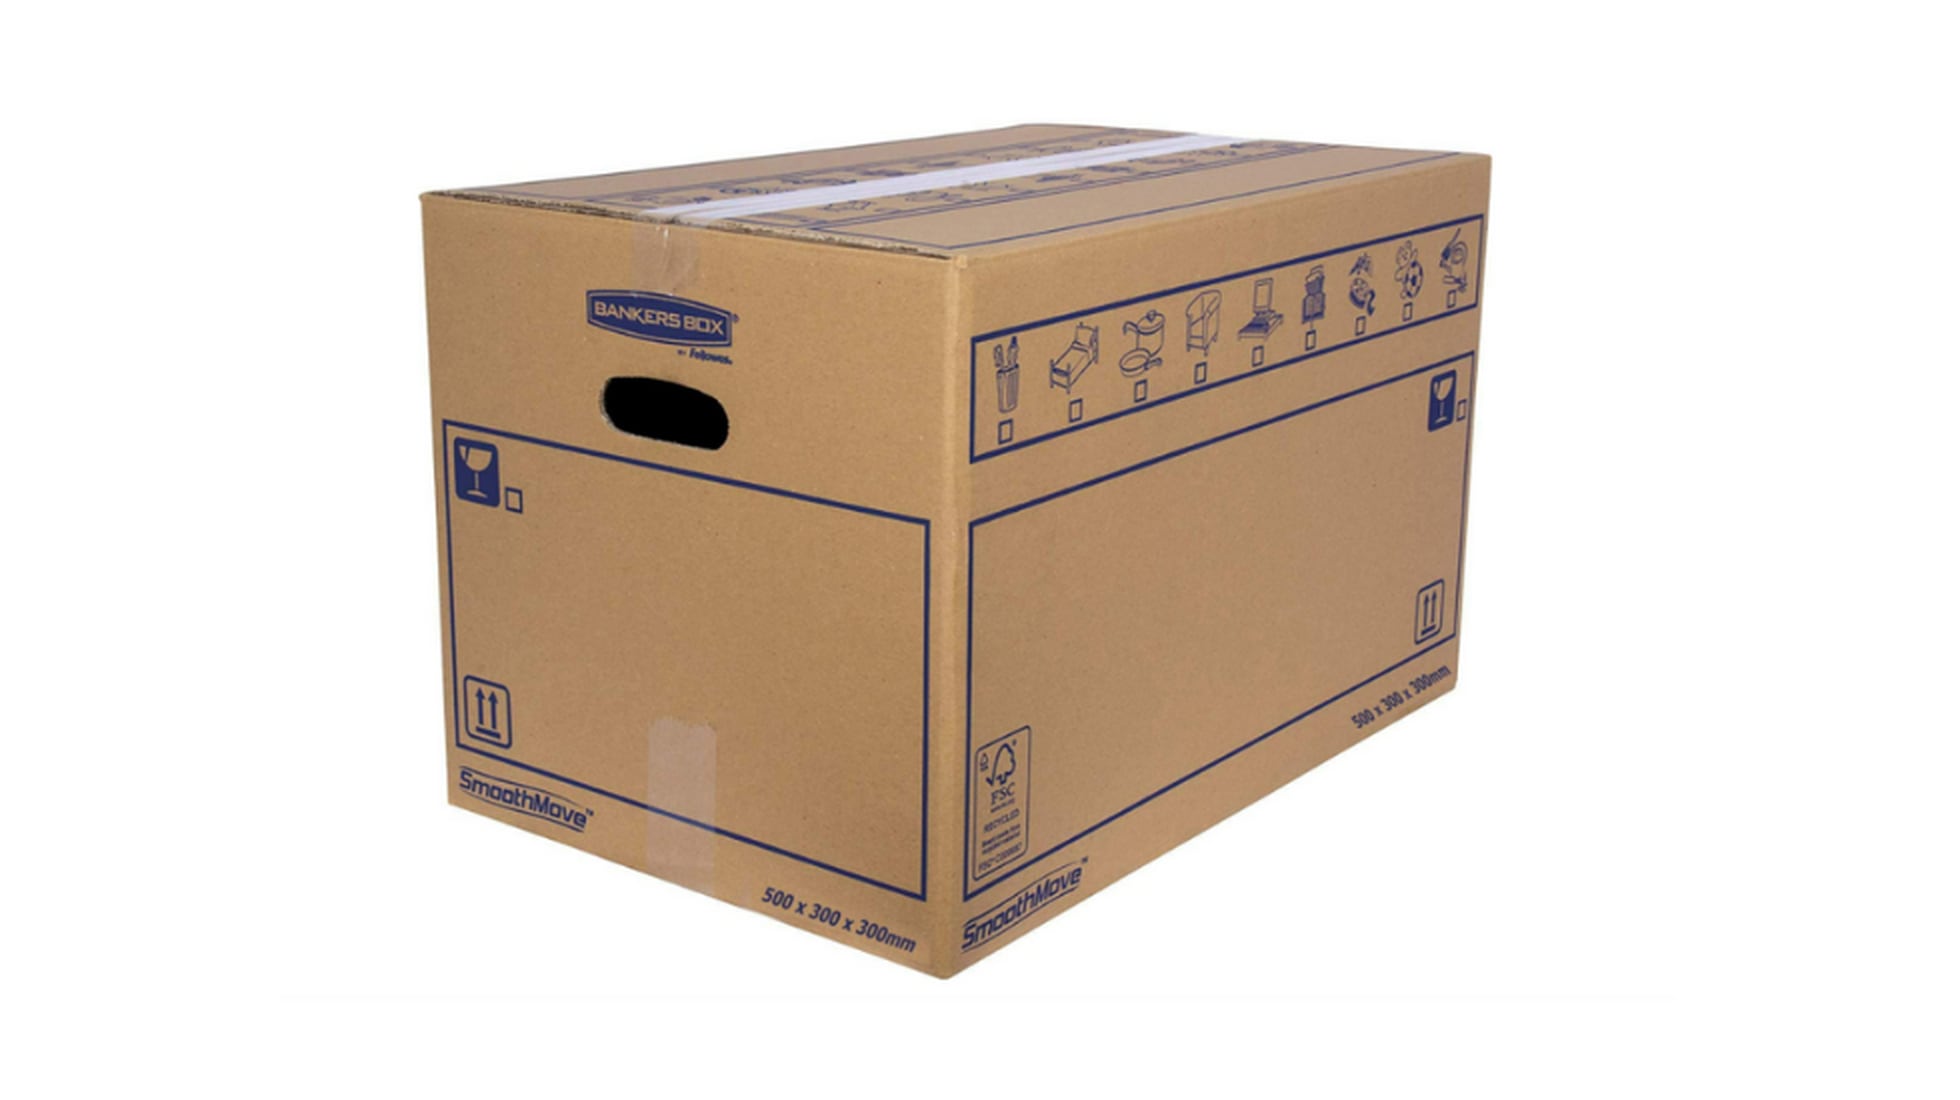 ▷ OFERTA Pack de 20 Cajas de Cartón con Asas 50x30x30 cm – Be Yours